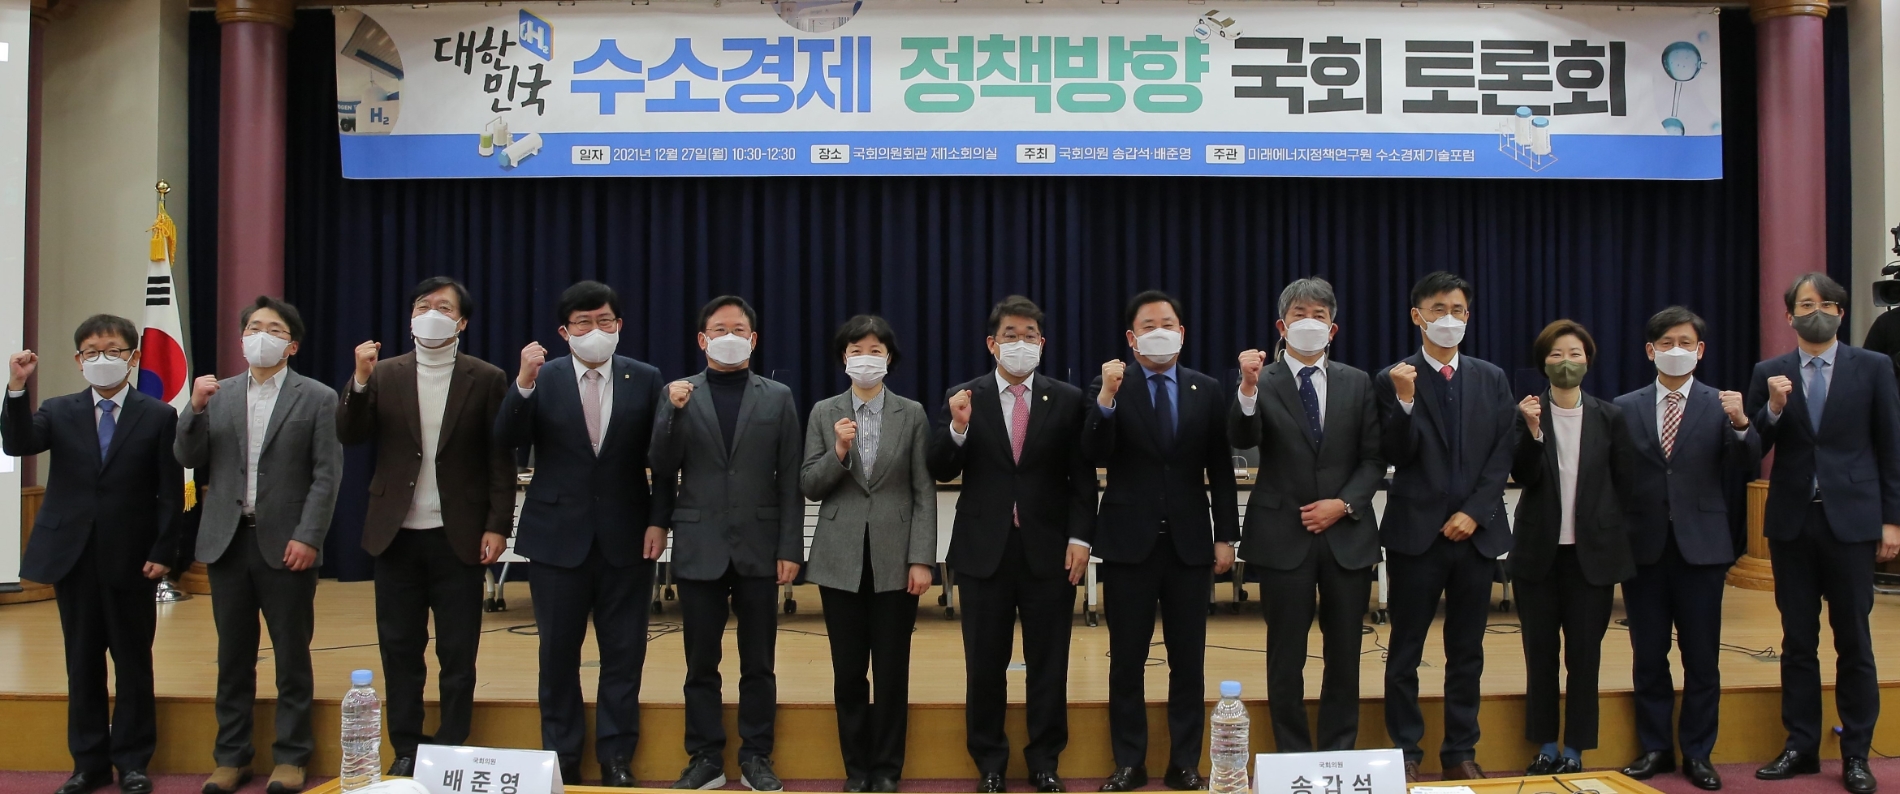 송갑석 의원, ‘대한민국 수소경제 정책방향’ 토론회 개최